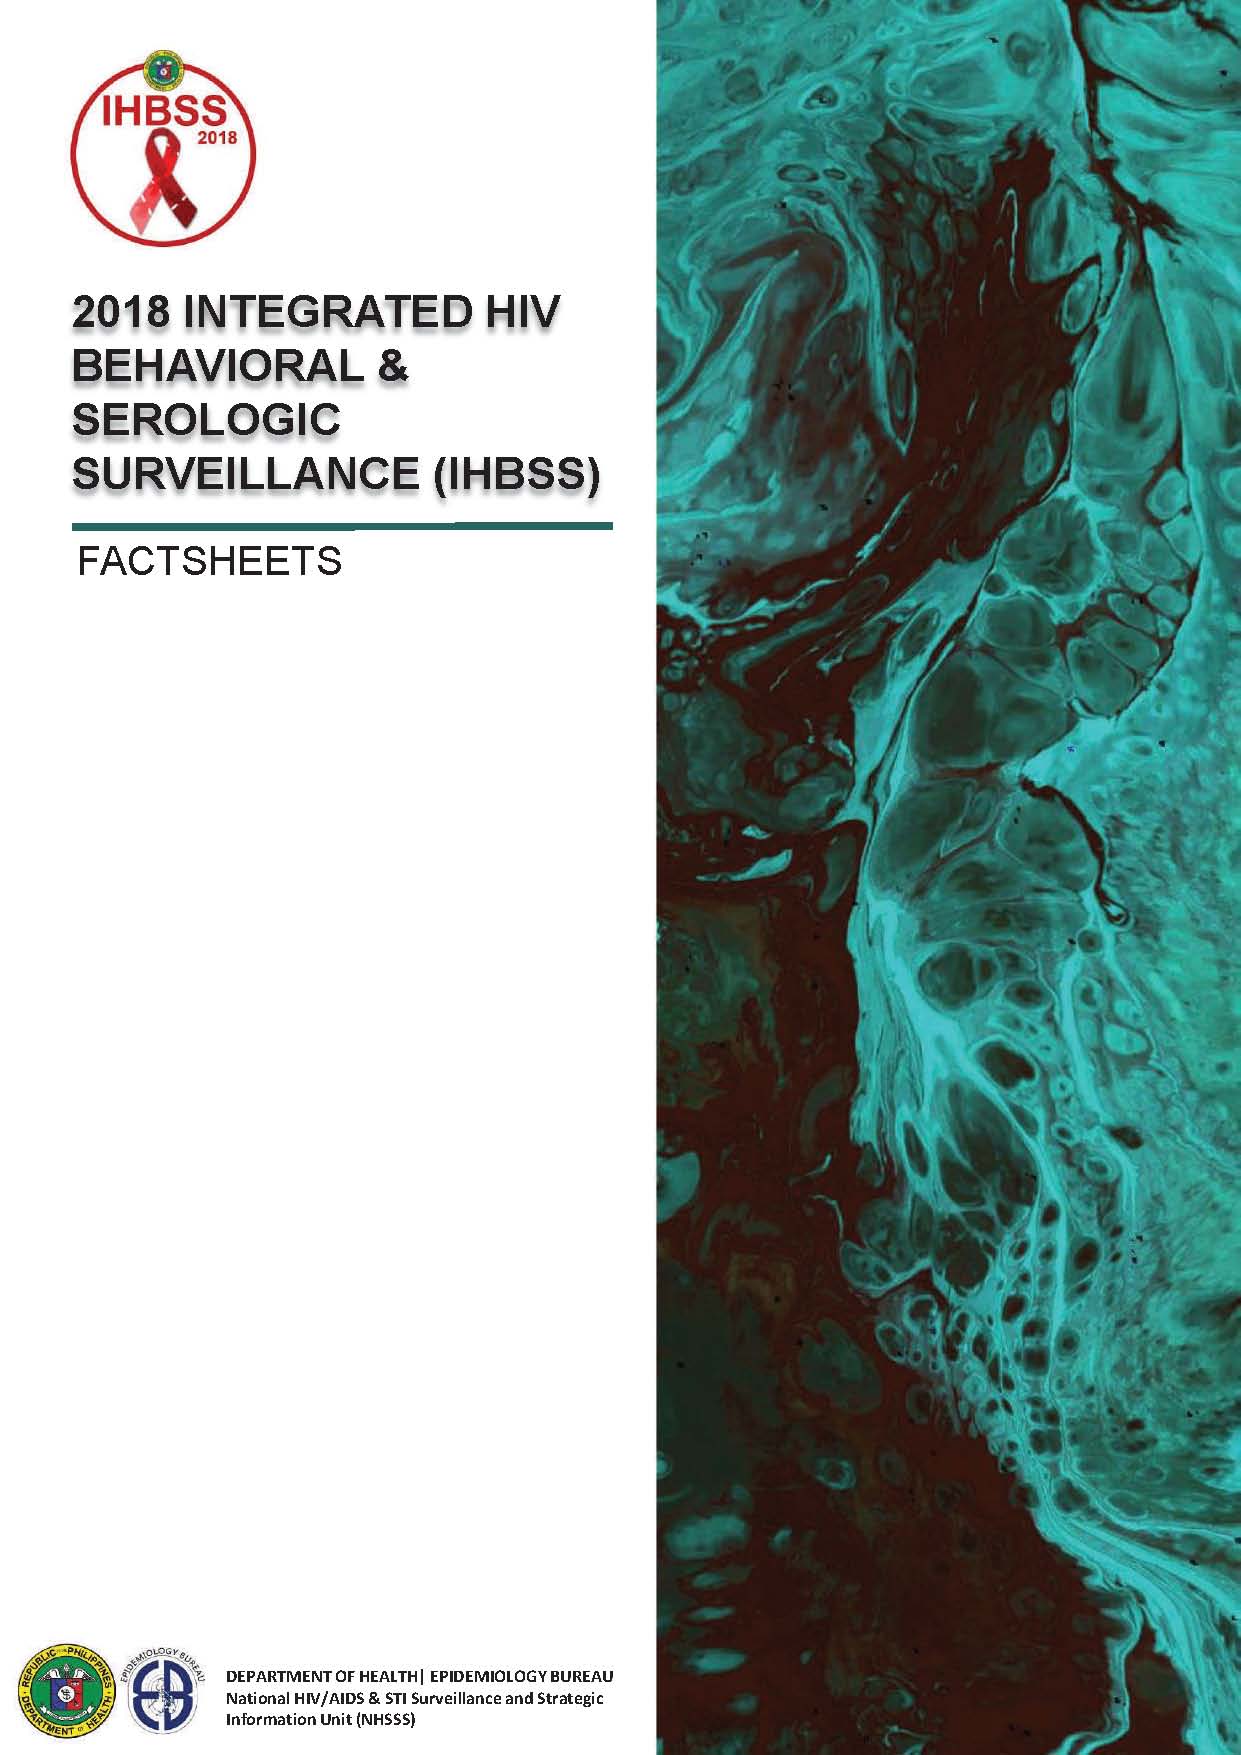 vigilância comportamental e serológica integrada do VIH de 2018 (IHBSS)